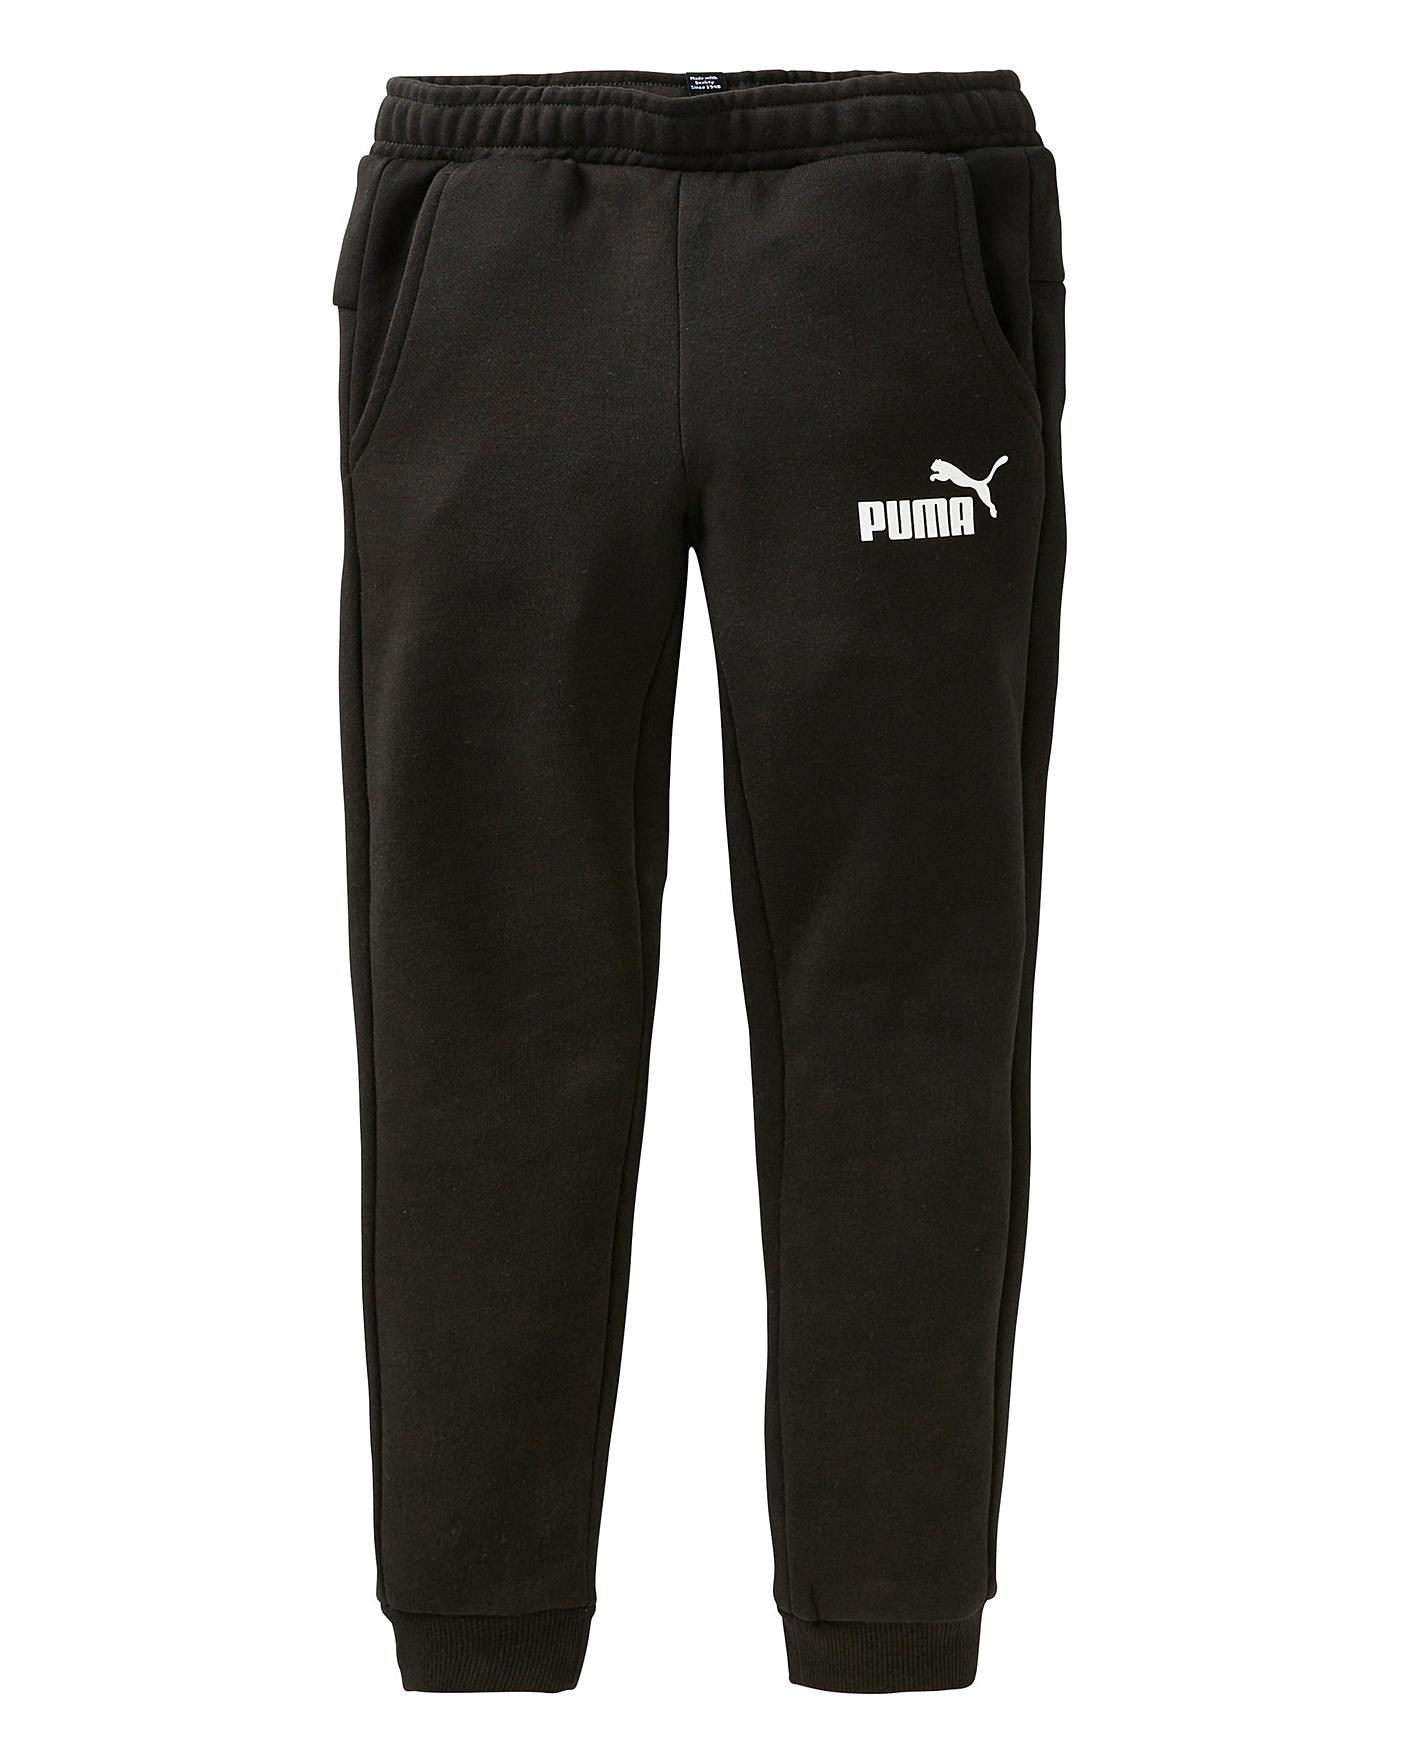 black puma jumper